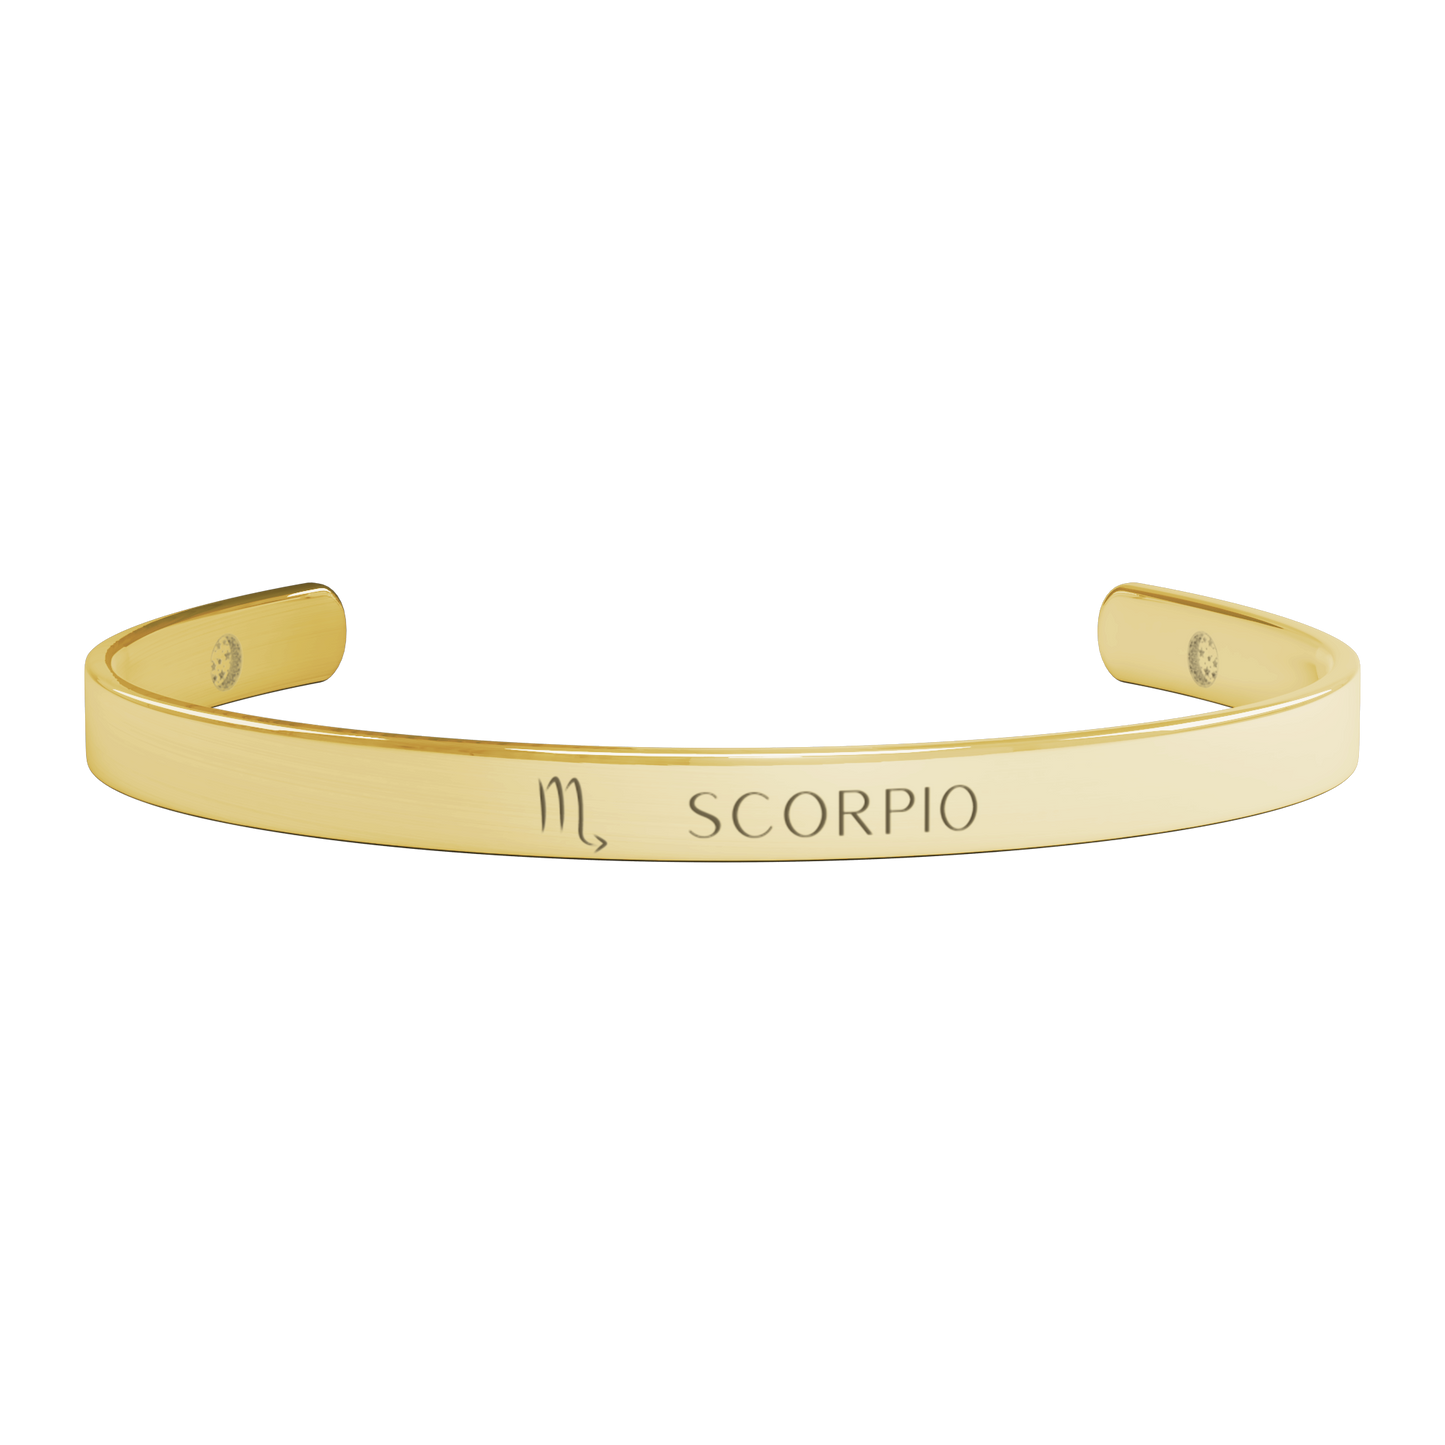 Scorpio Cuff Bracelet